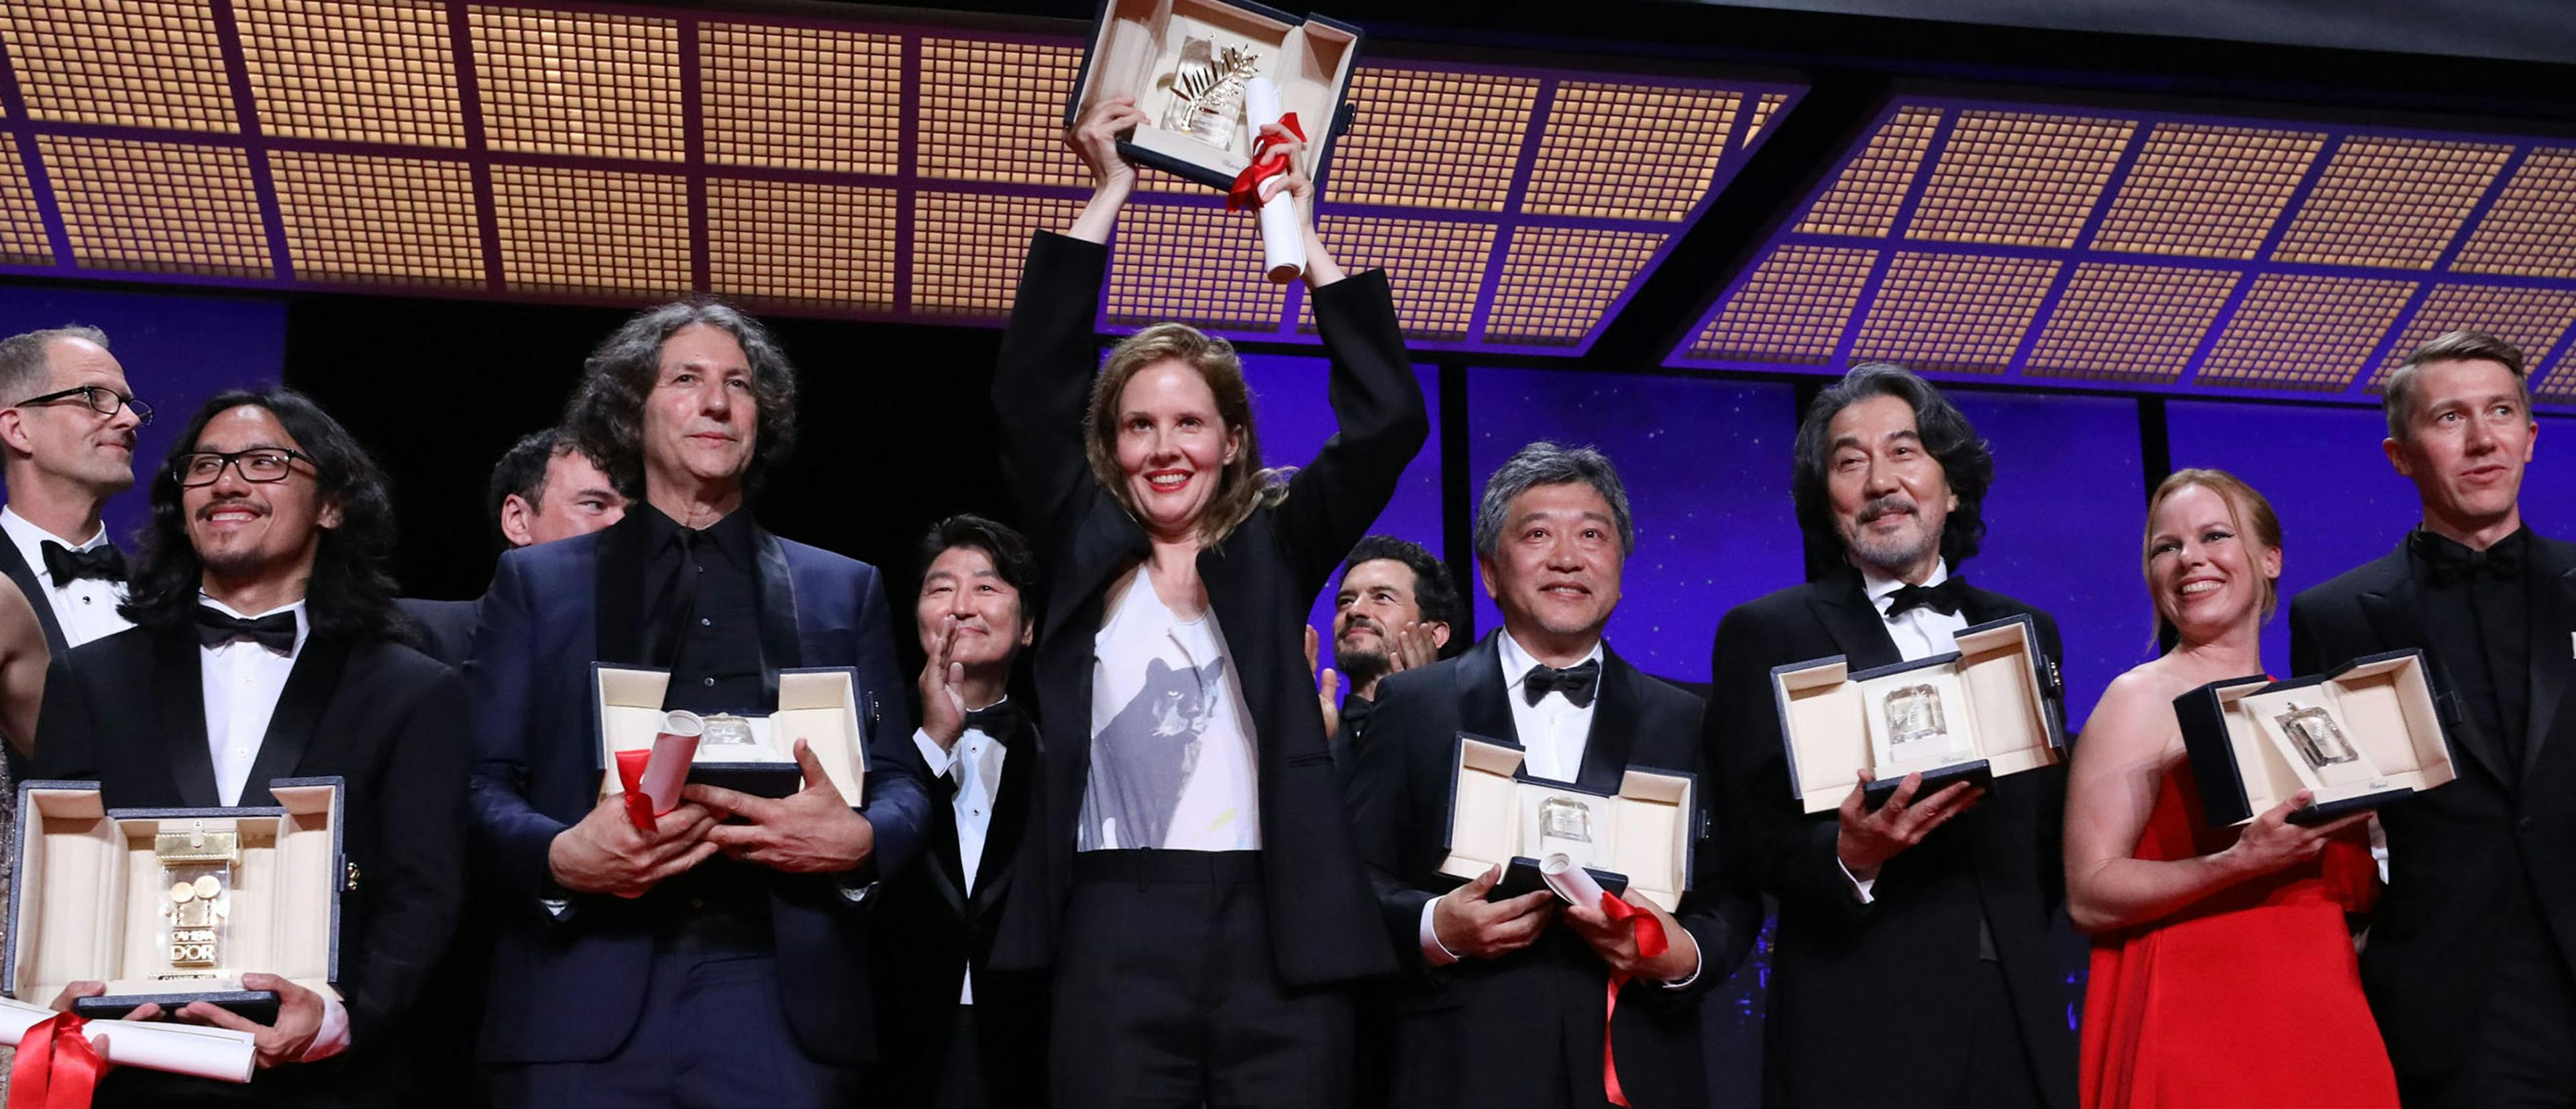 La directora francesa Justine Triet sostiene la Palma de Oro del Festival de Cannes por 'Anatomía de una caída'